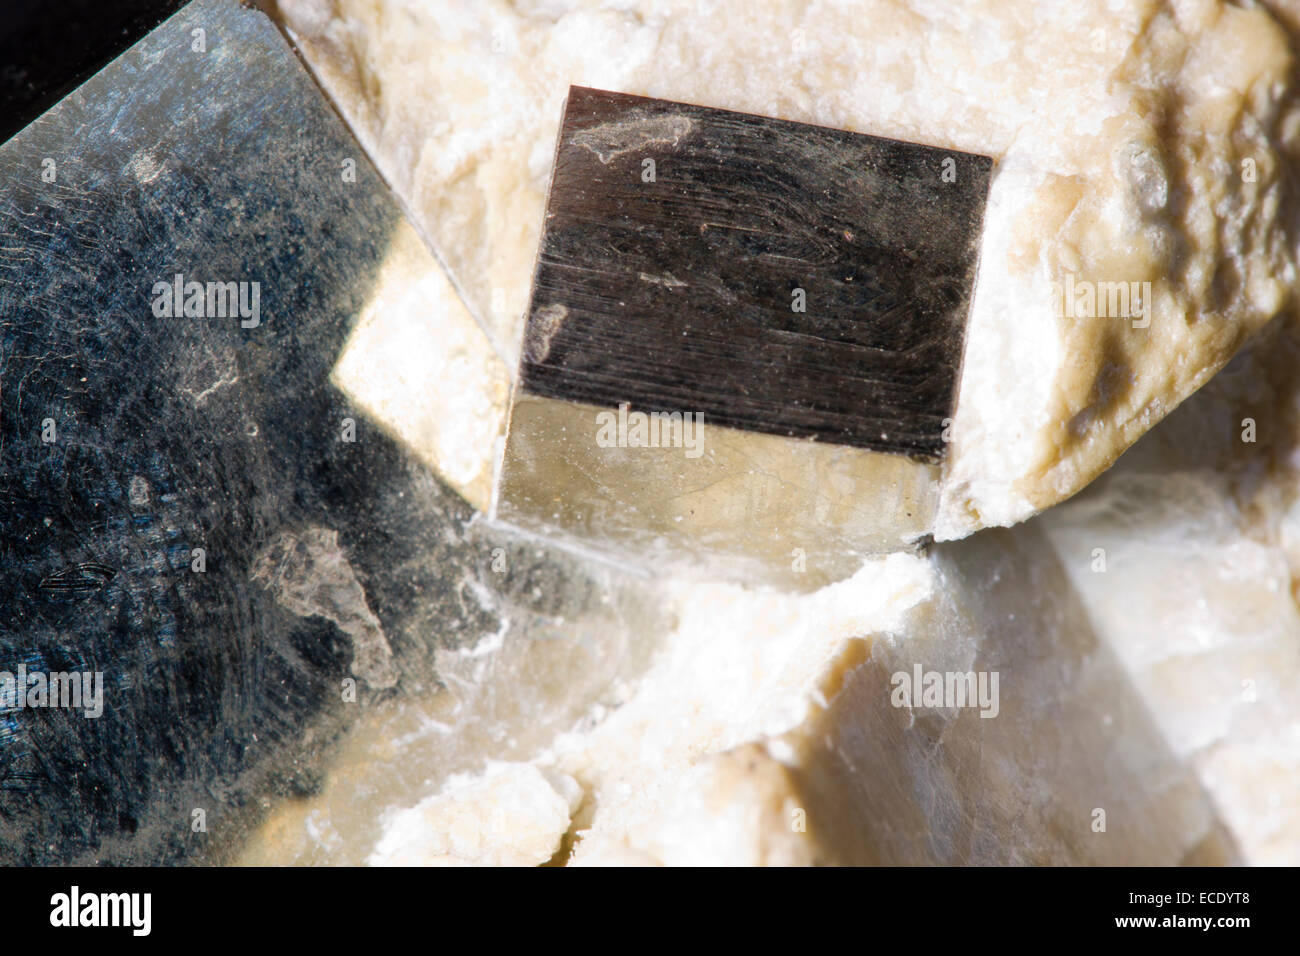 La pyrite de fer ou l'or des fous les cristaux. Les cristaux cubiques sur la roche hôte. Origine inconnue. Banque D'Images